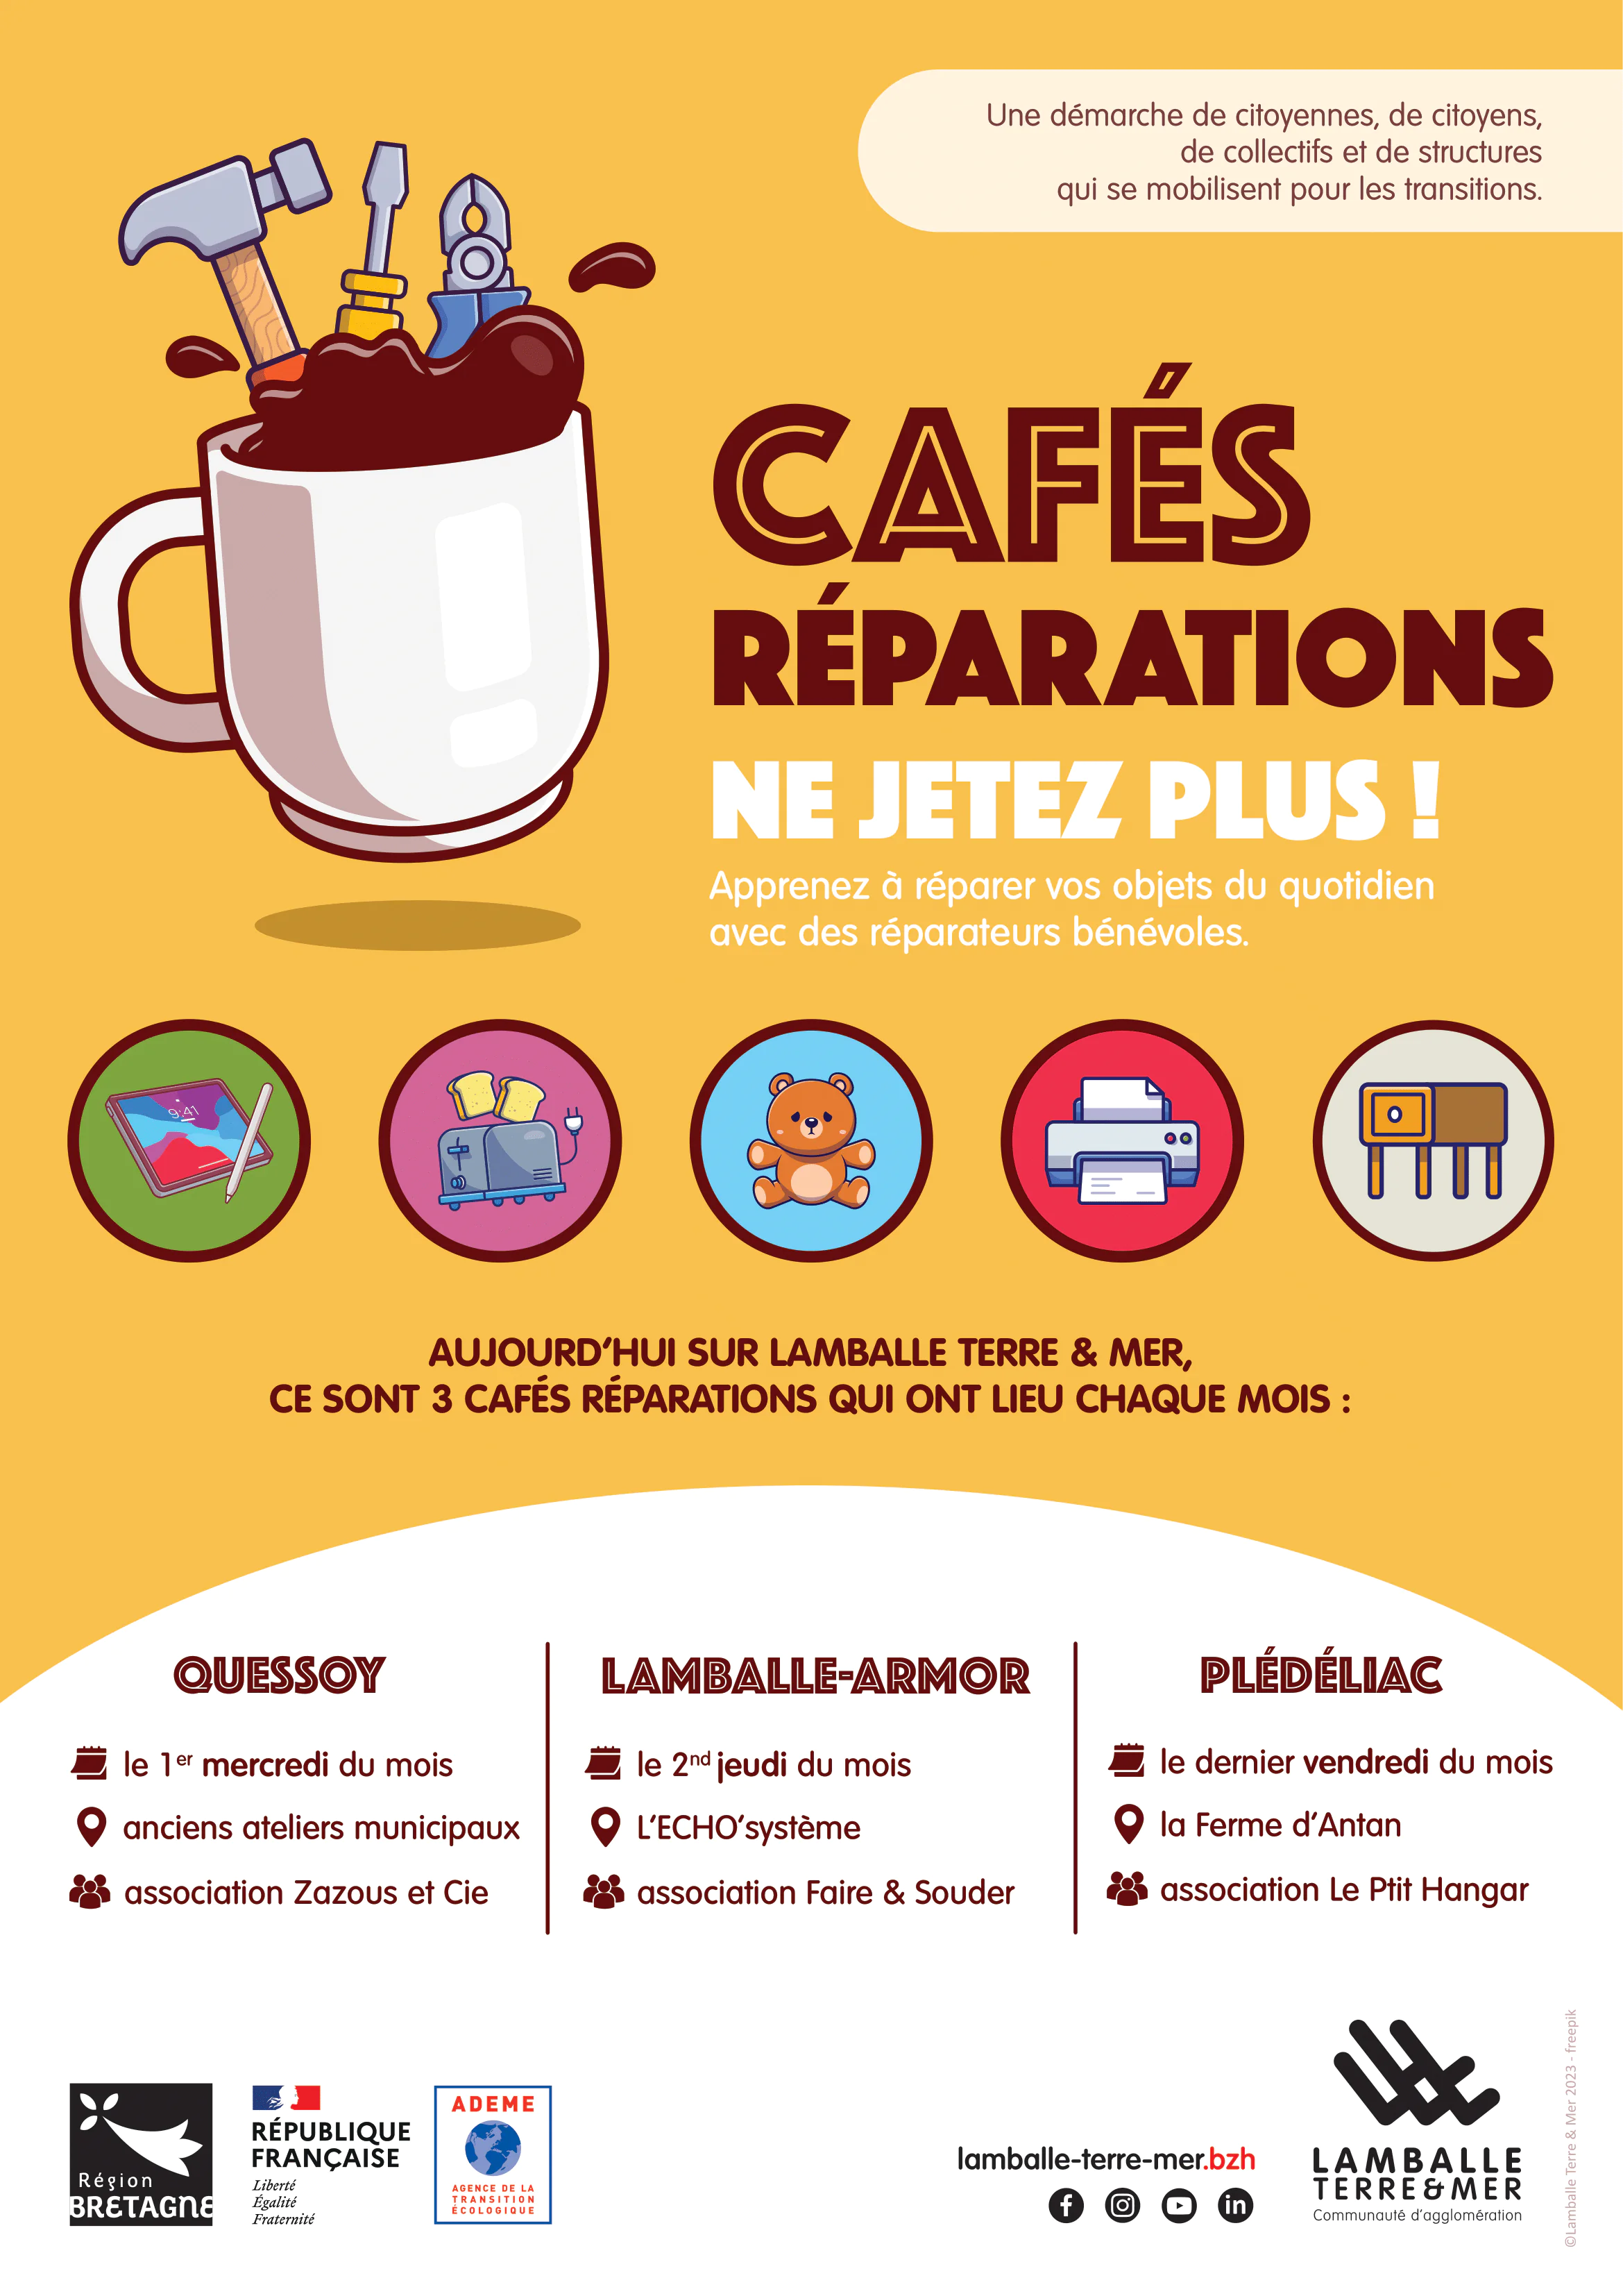 Café Réparation